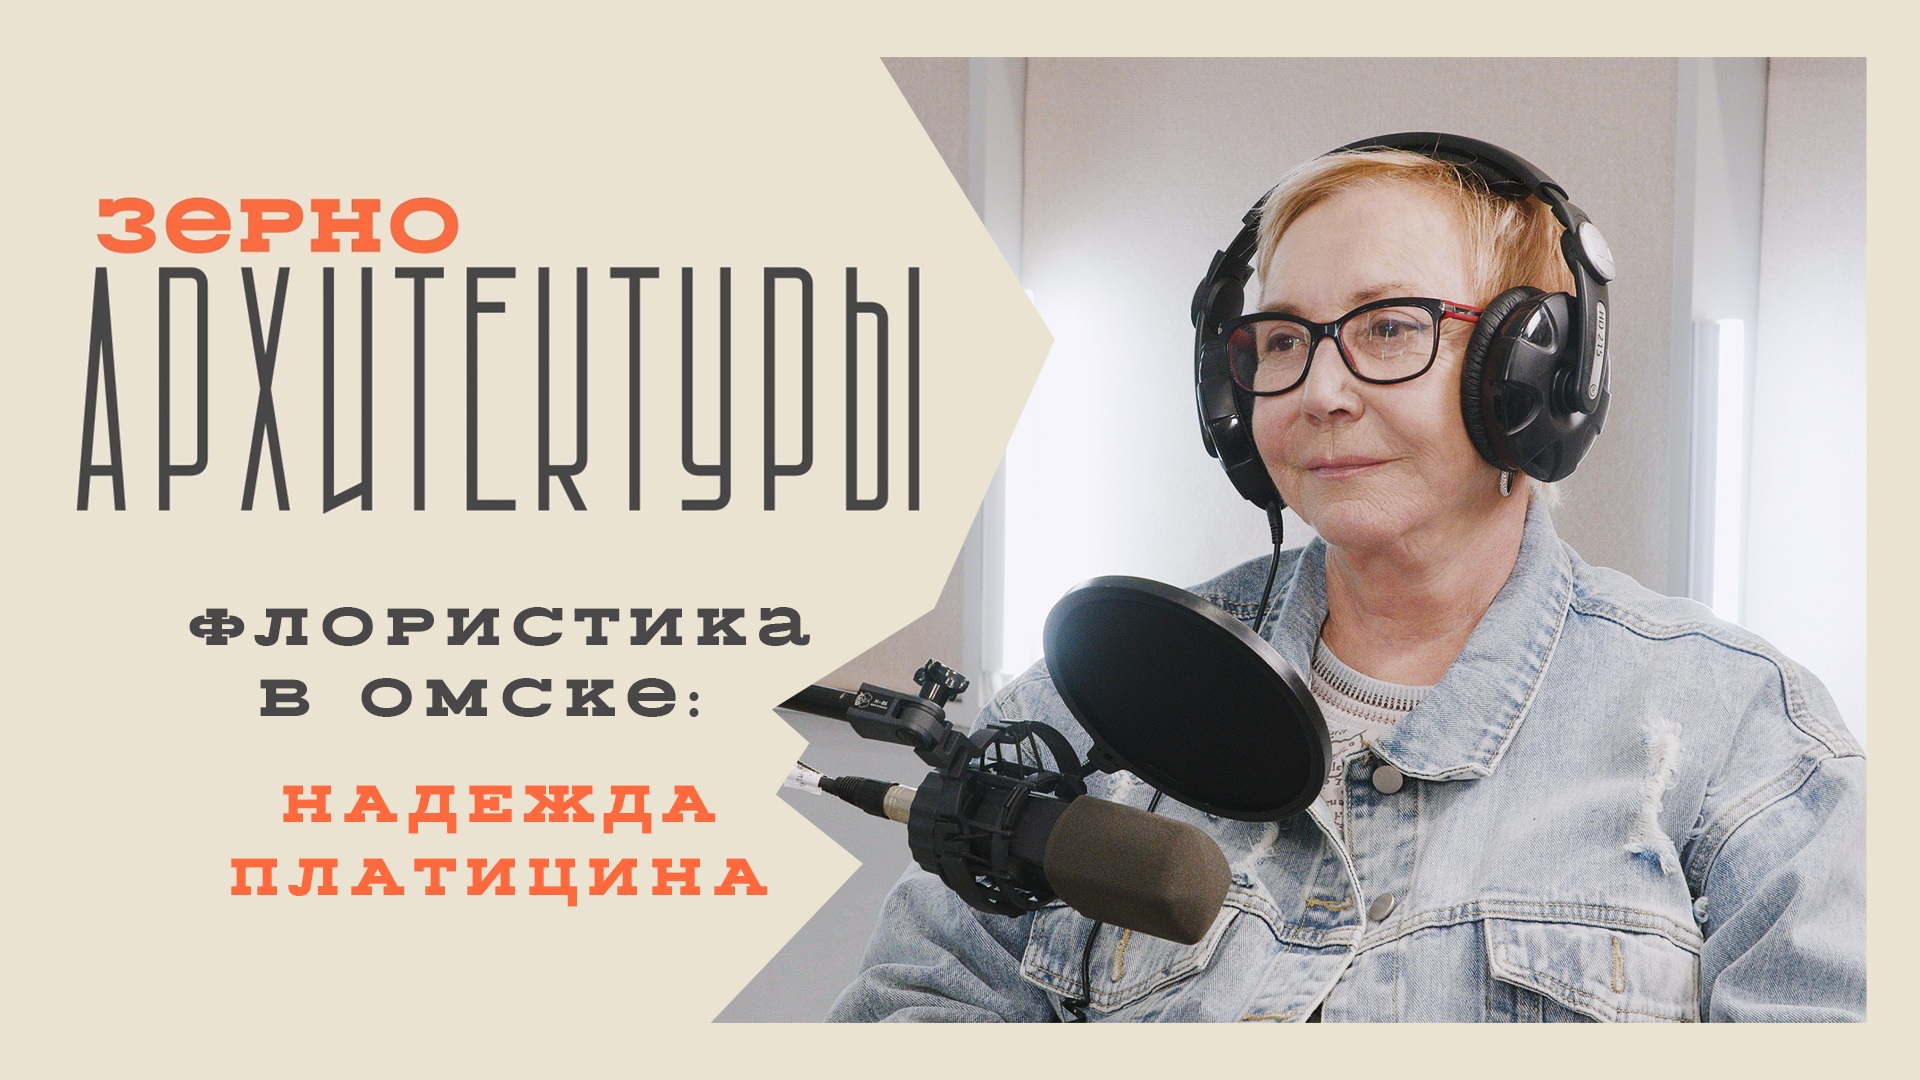 Флористика в Омске: Надежда Платицина | Видеоподкаст «Зерно архитектуры»